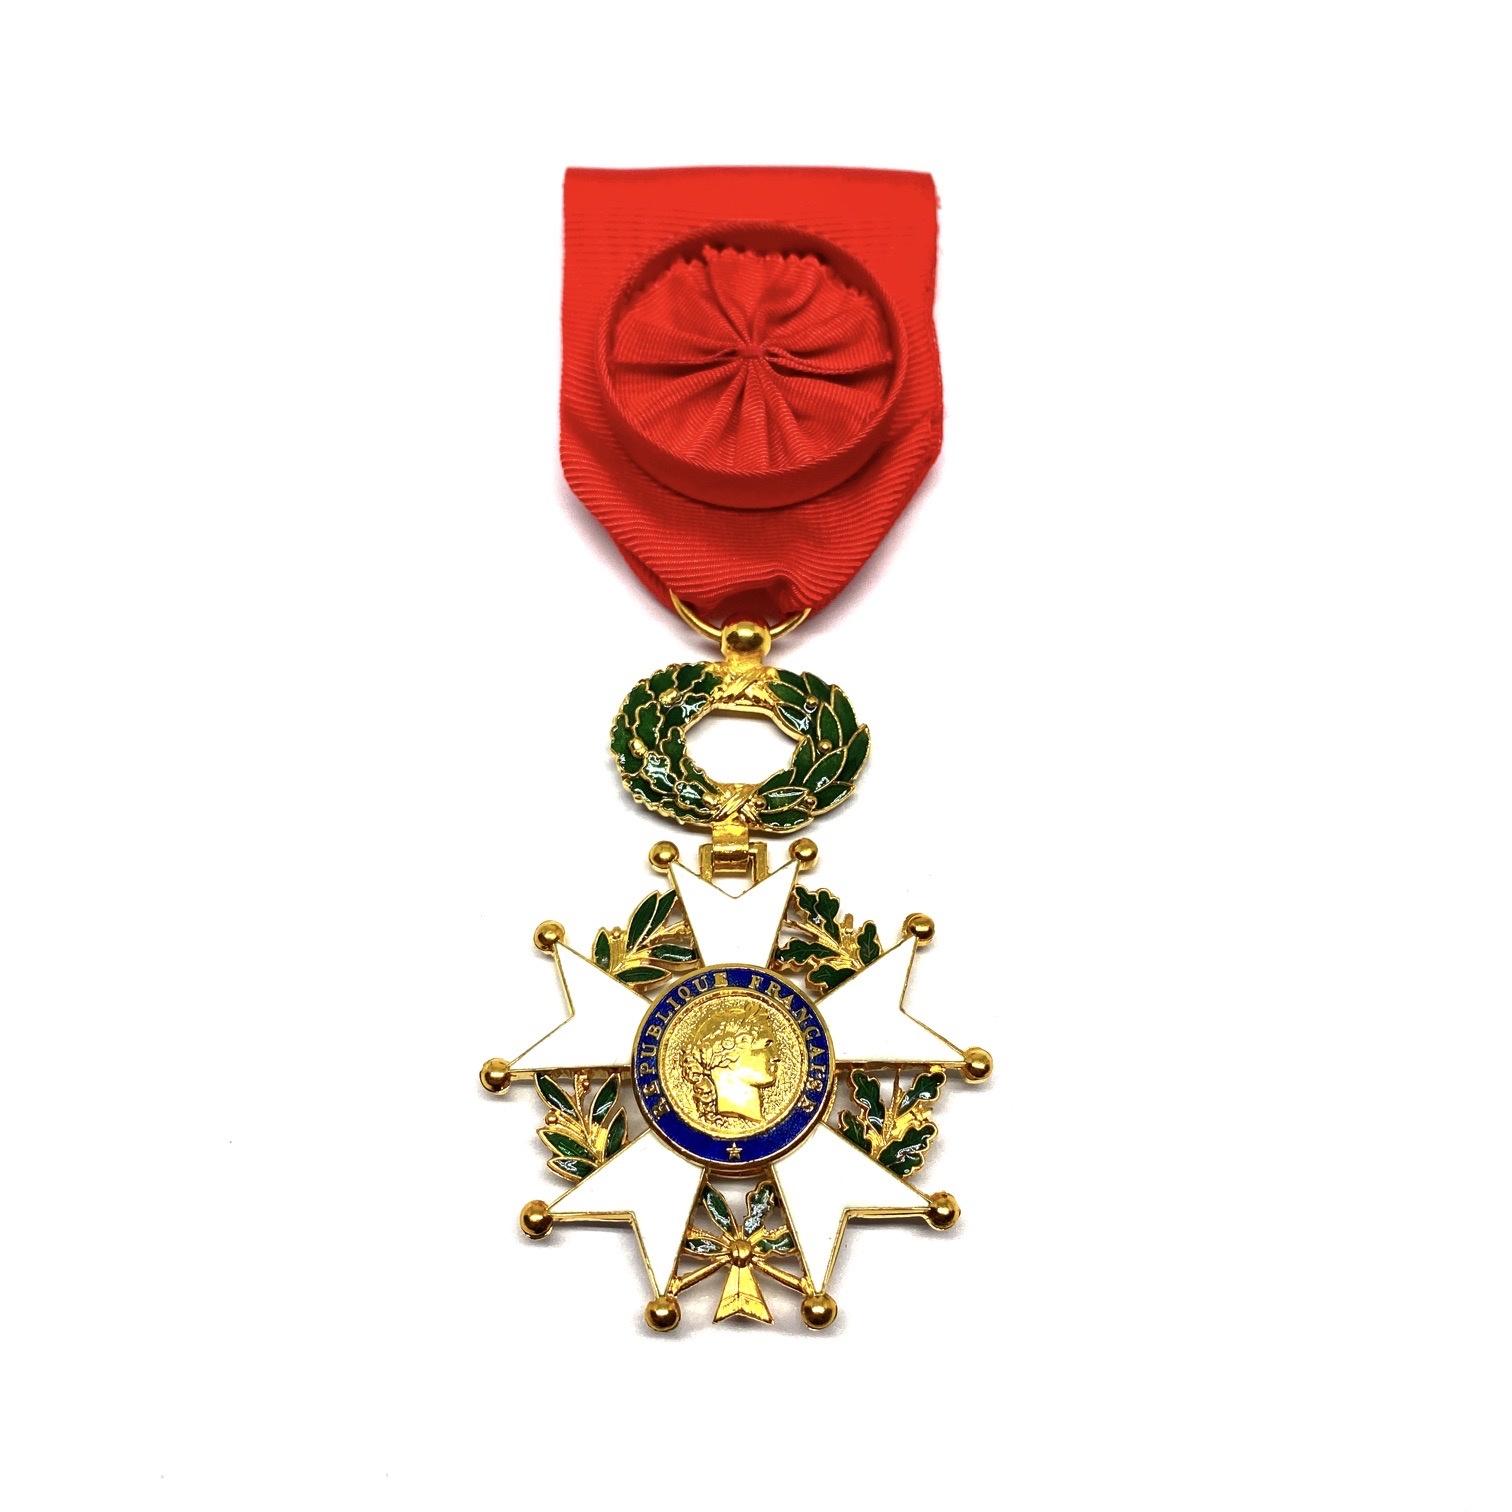 Decoration Officer in the Legion of Honour (Légion d'Honneur)